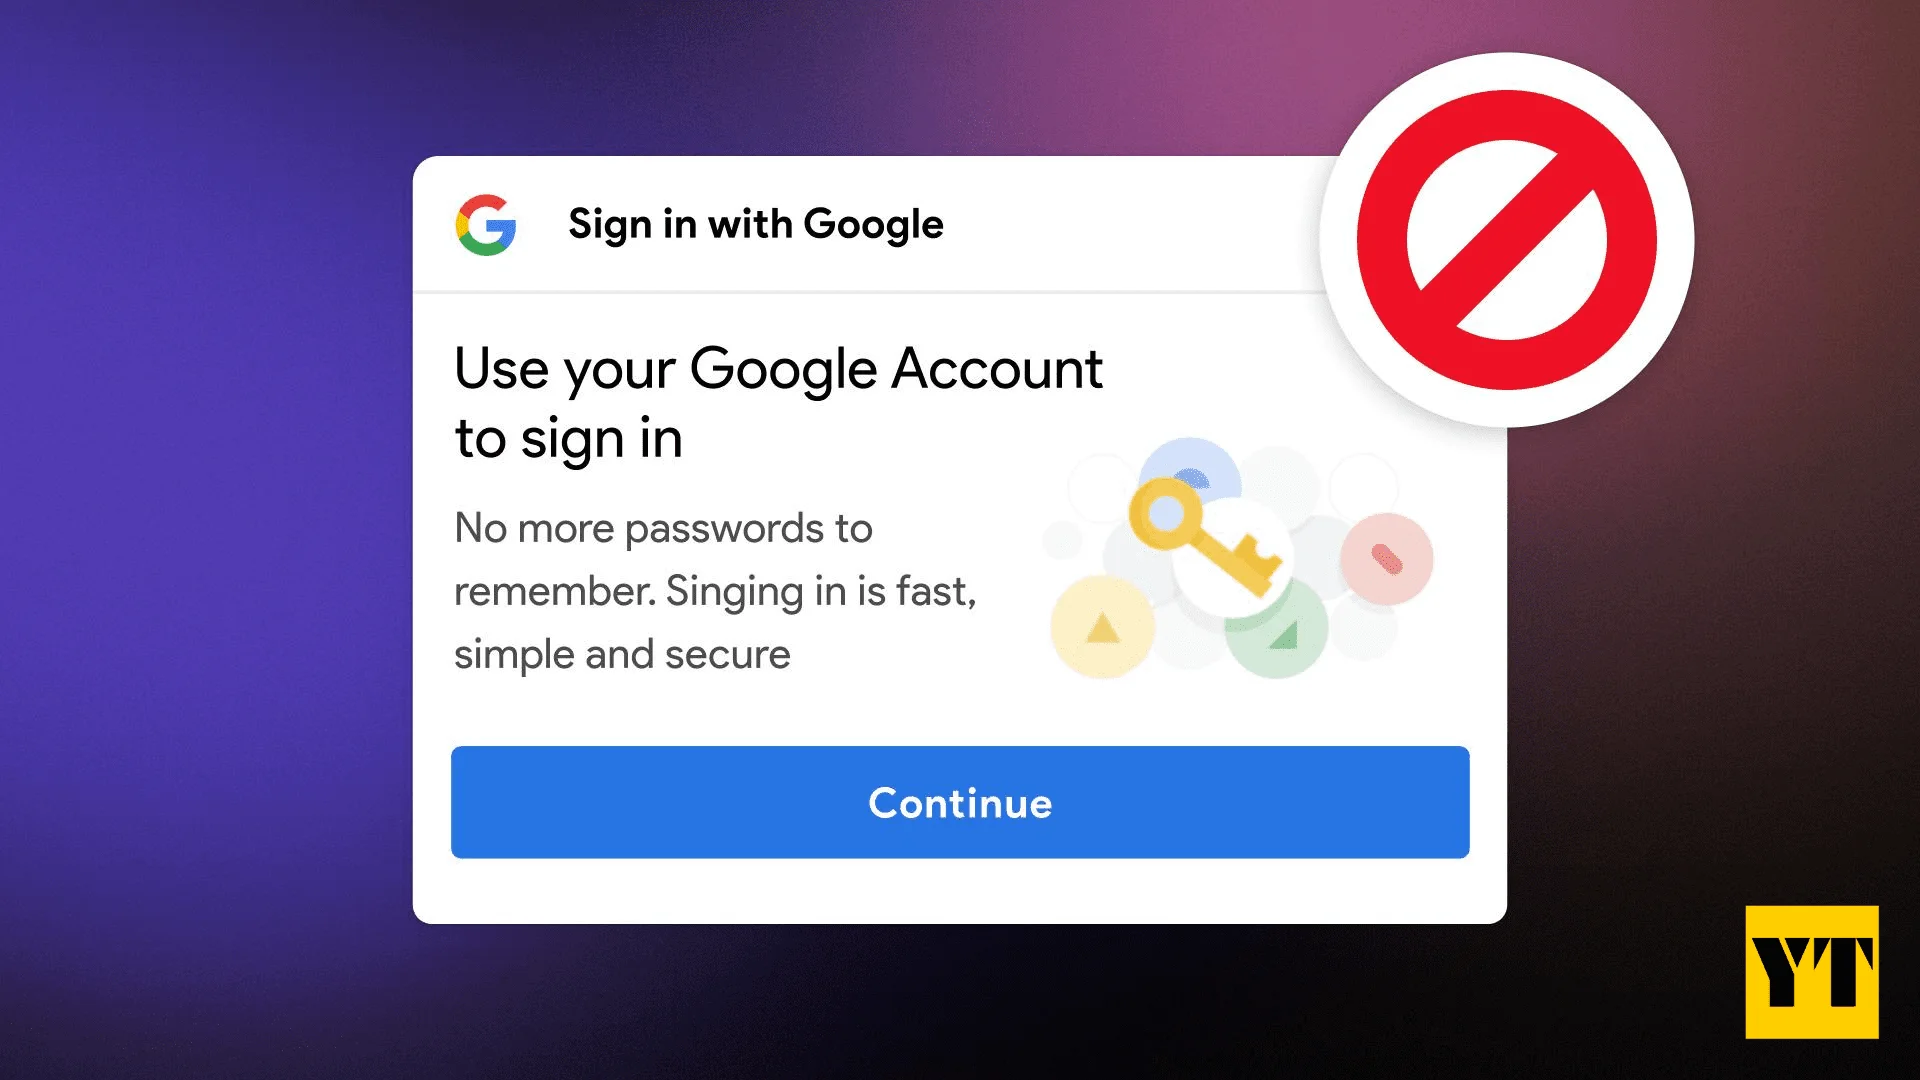 DuckDuckGo Will Block Google's Sign-In Popups